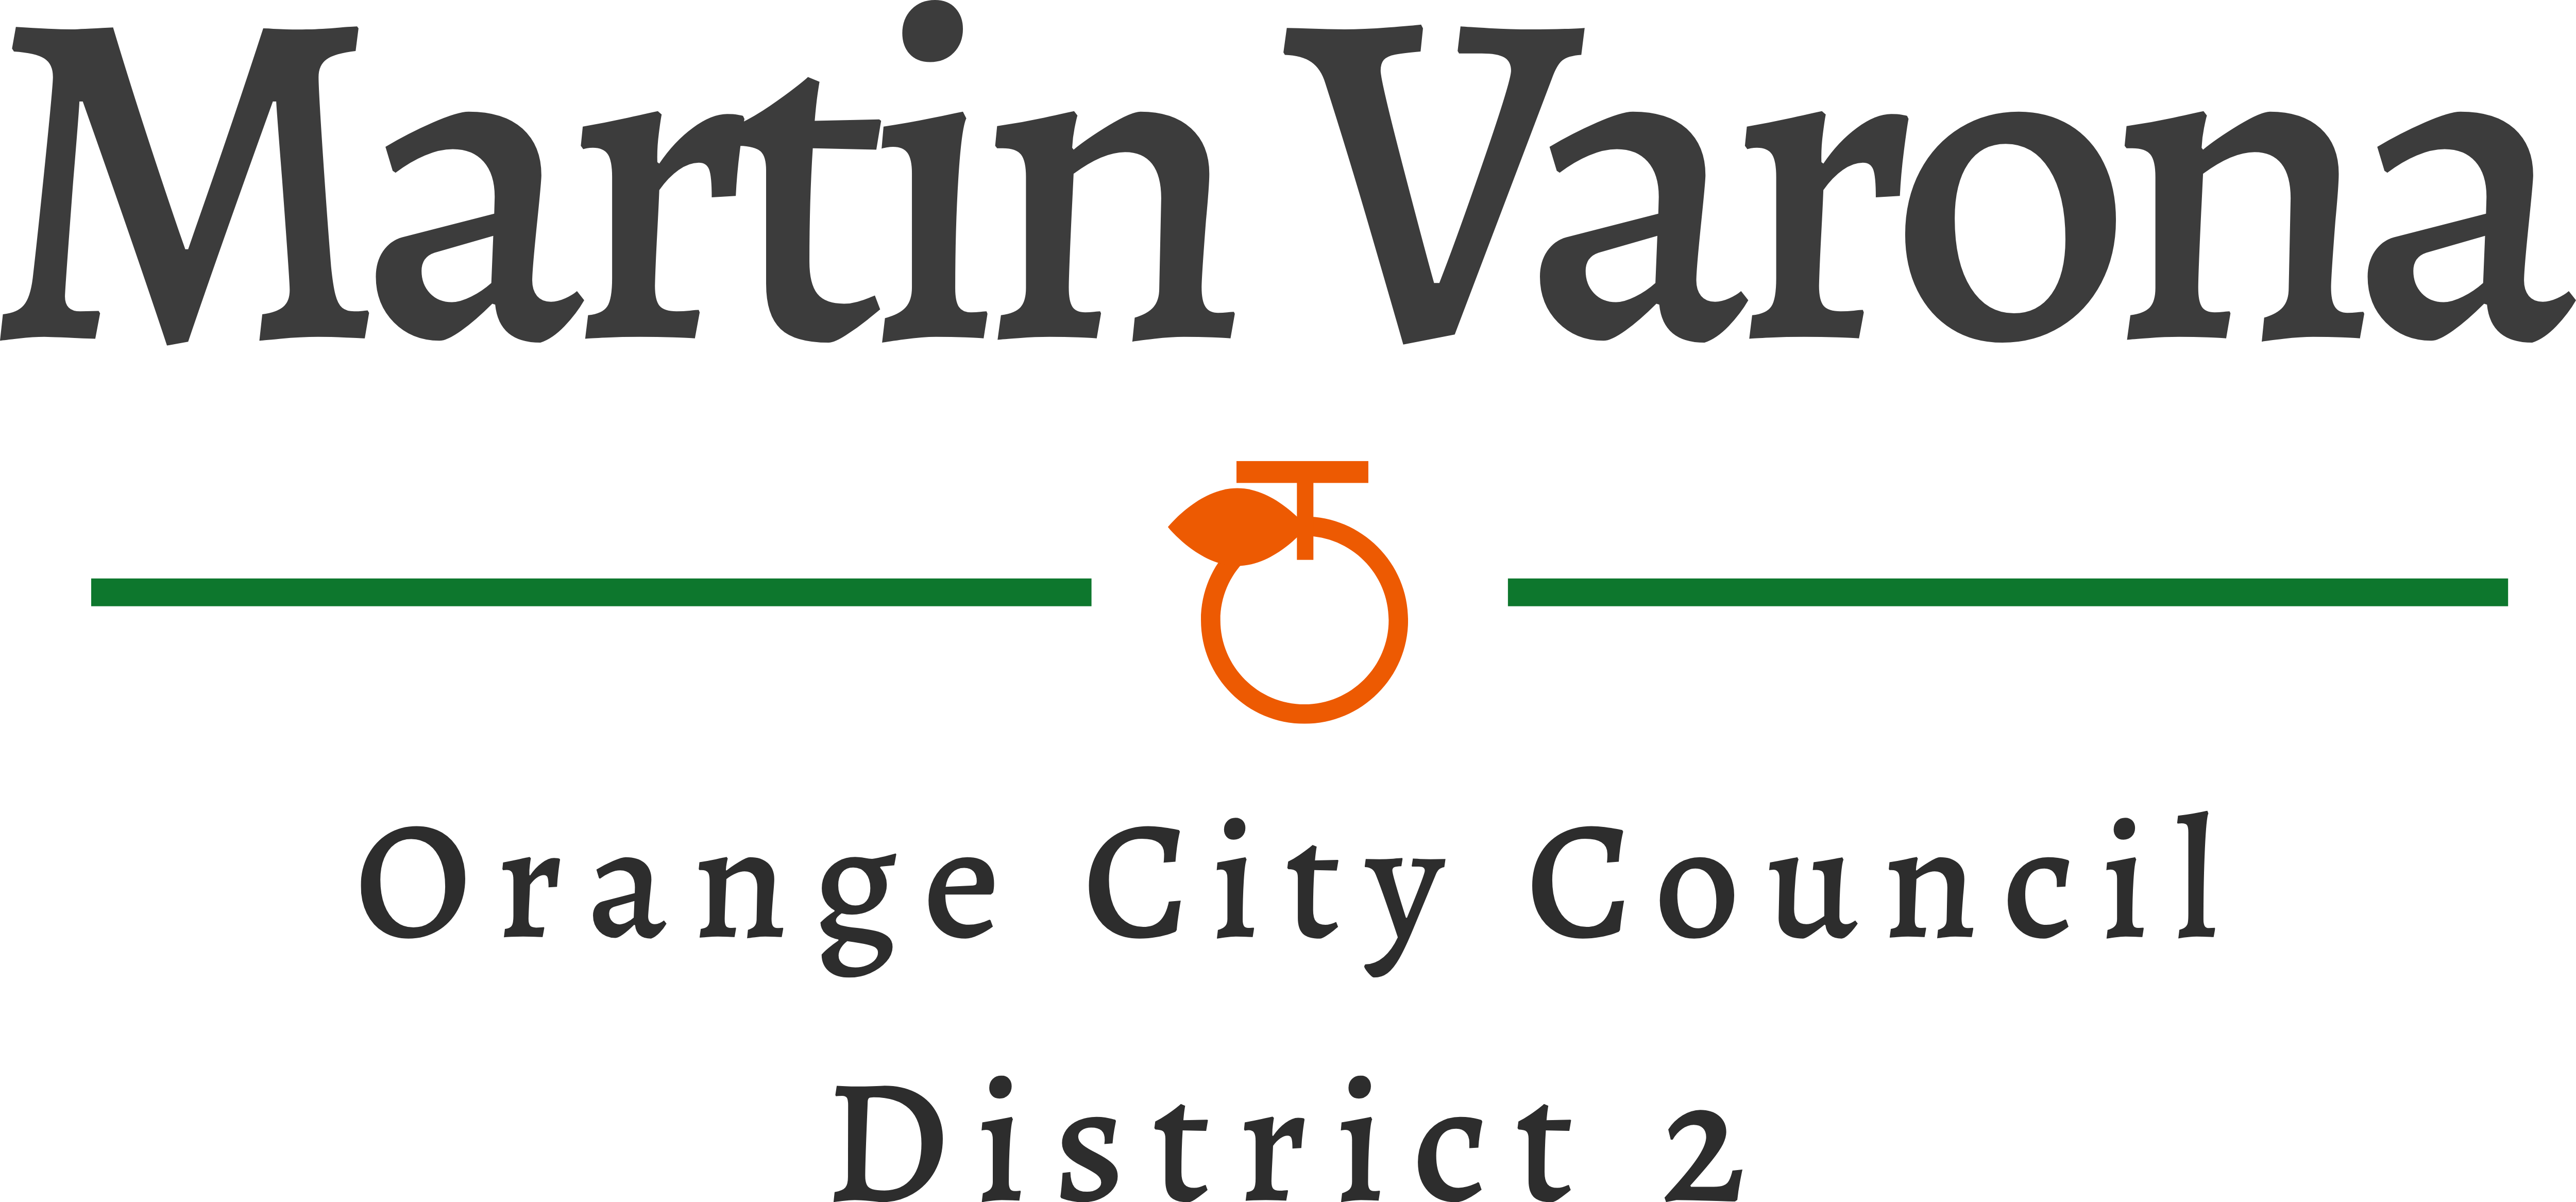 Martin Varona for Orange logo